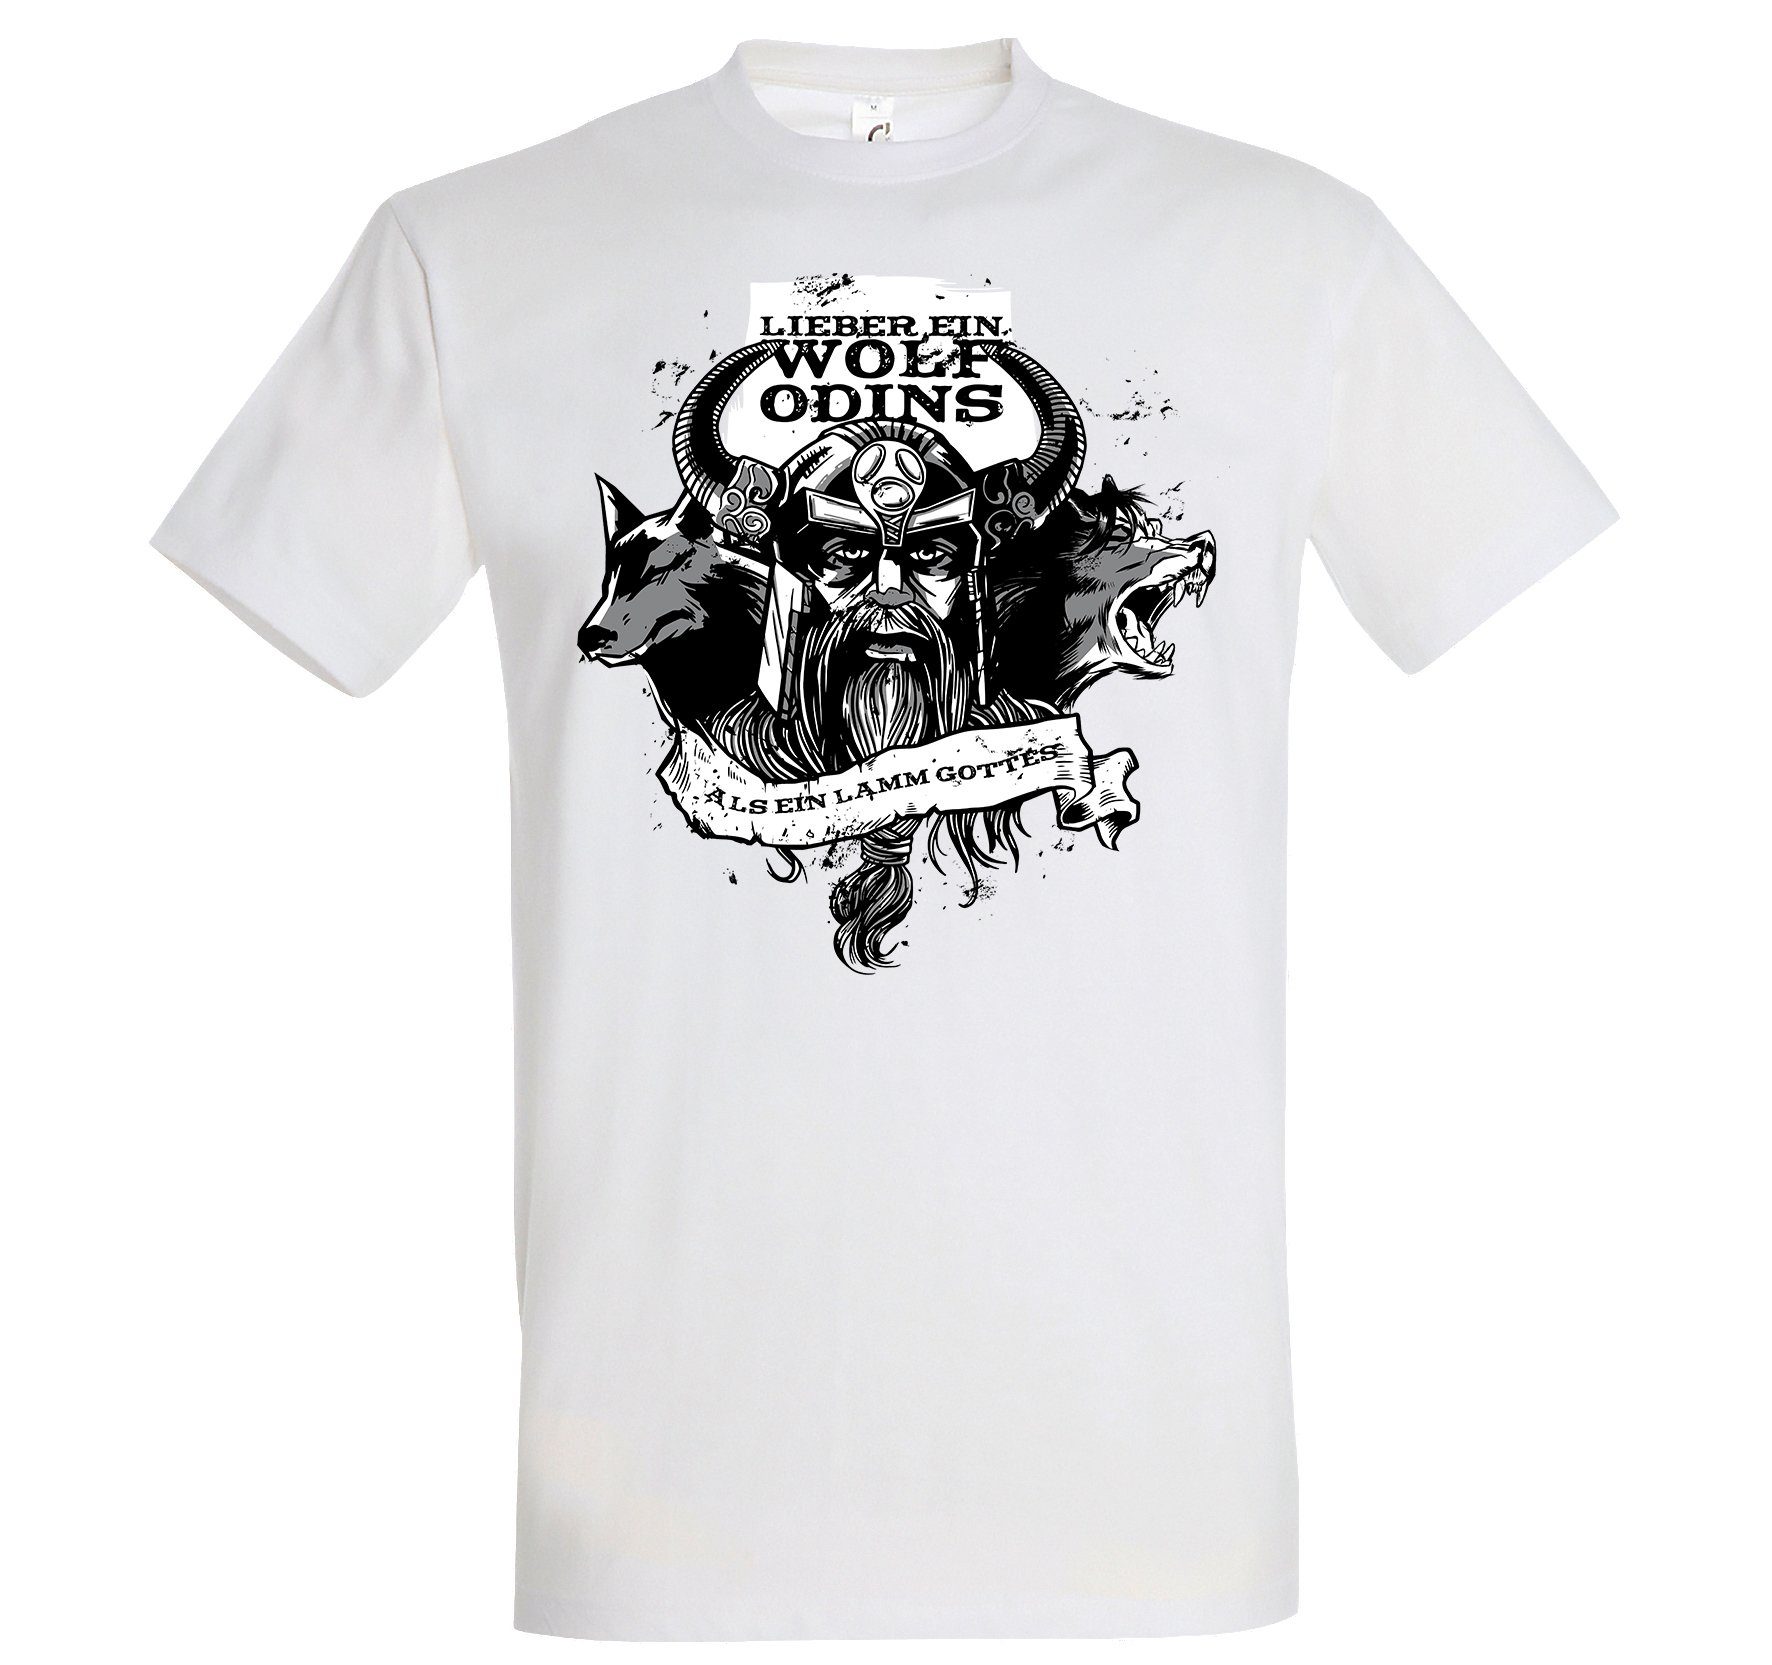 Youth Designz Print-Shirt "Lieber ein Wolf Odins" Herren T-Shirt mit lustigem Spruch Weiss